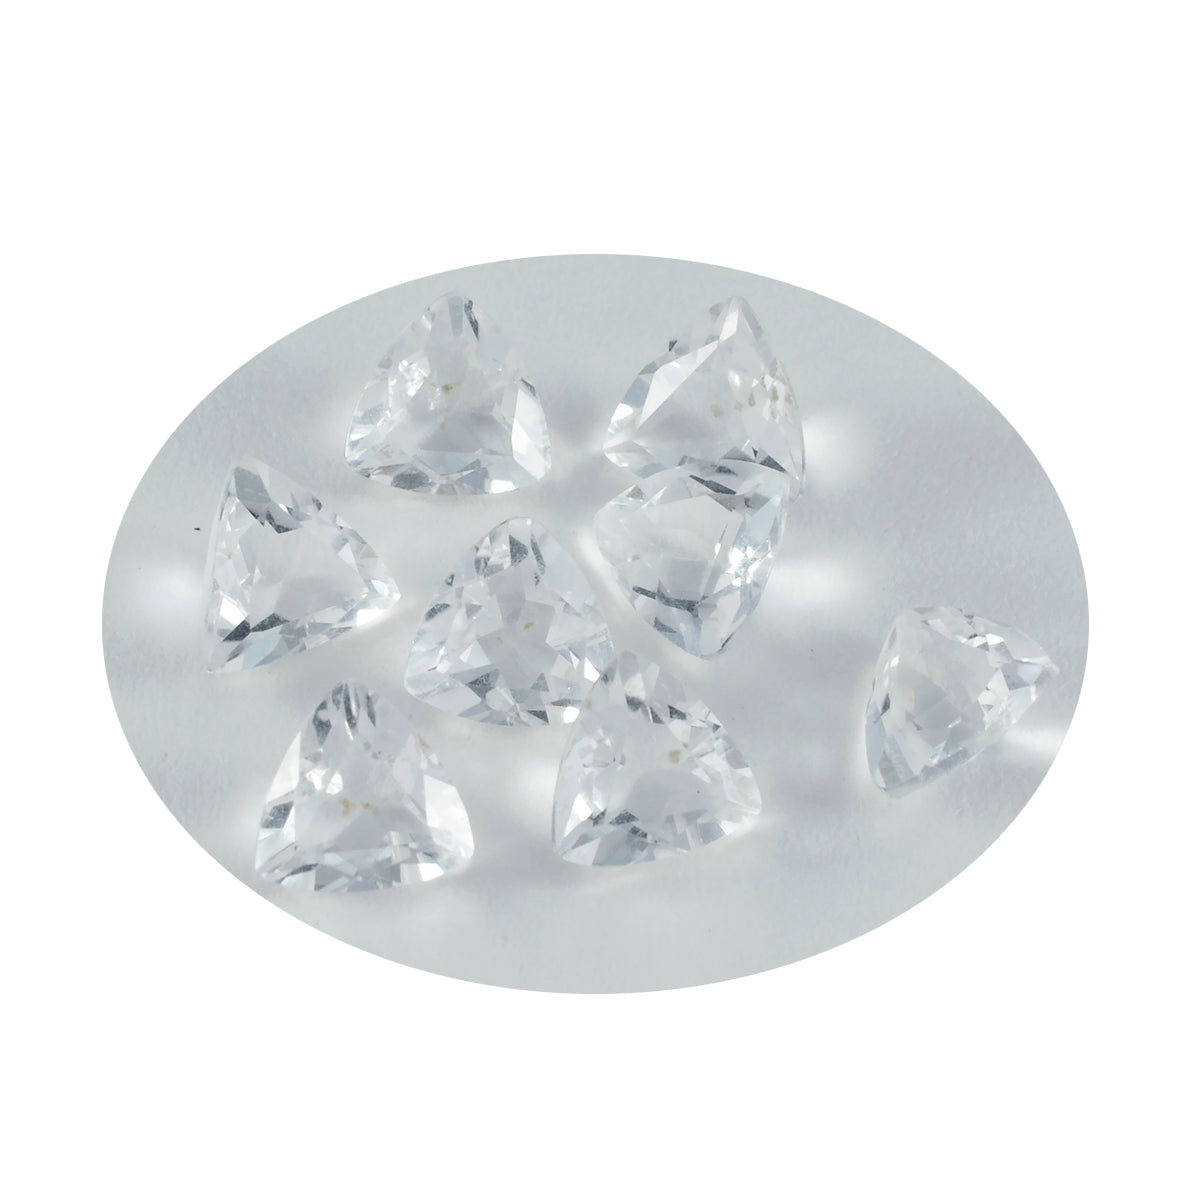 riyogems 1 шт., белые кристаллы кварца, граненые 9x9 мм, форма триллиона, красивые качественные свободные драгоценные камни